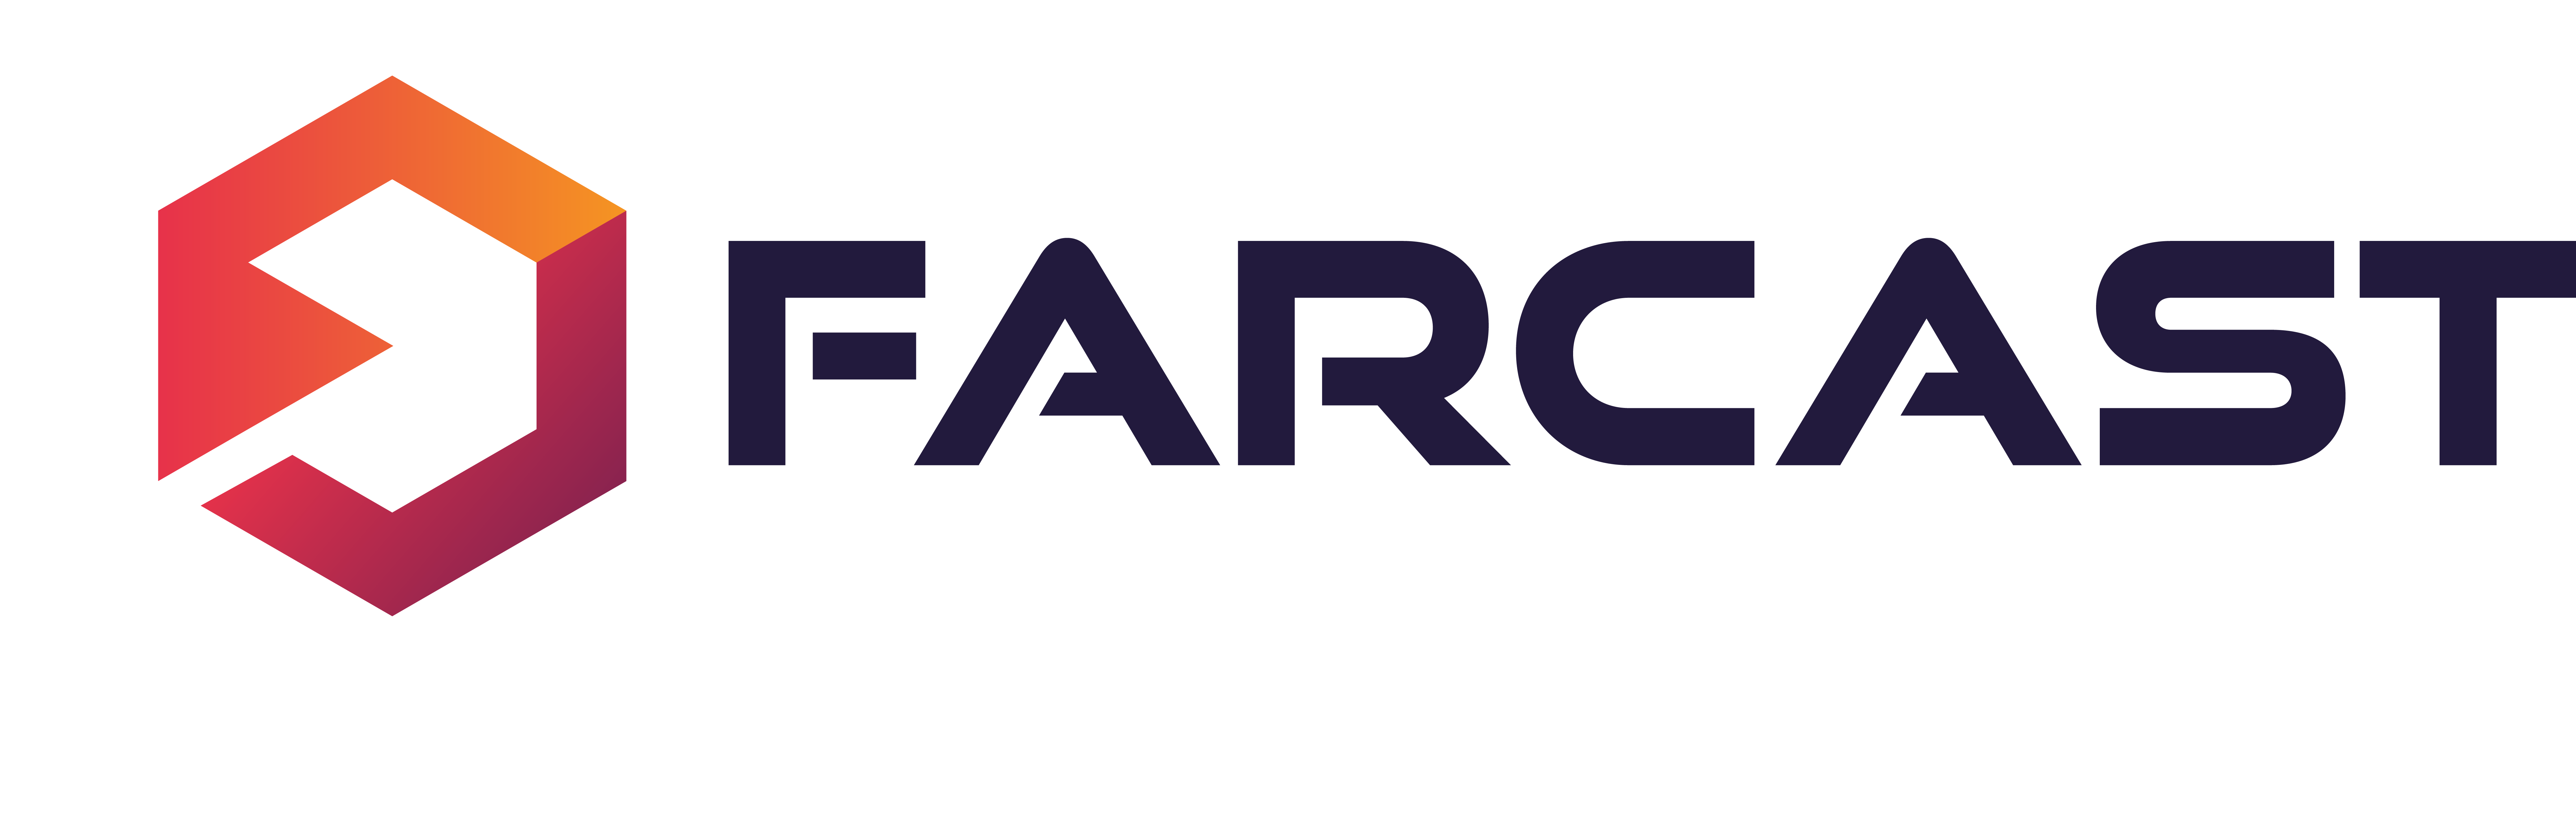 Farcast-logo